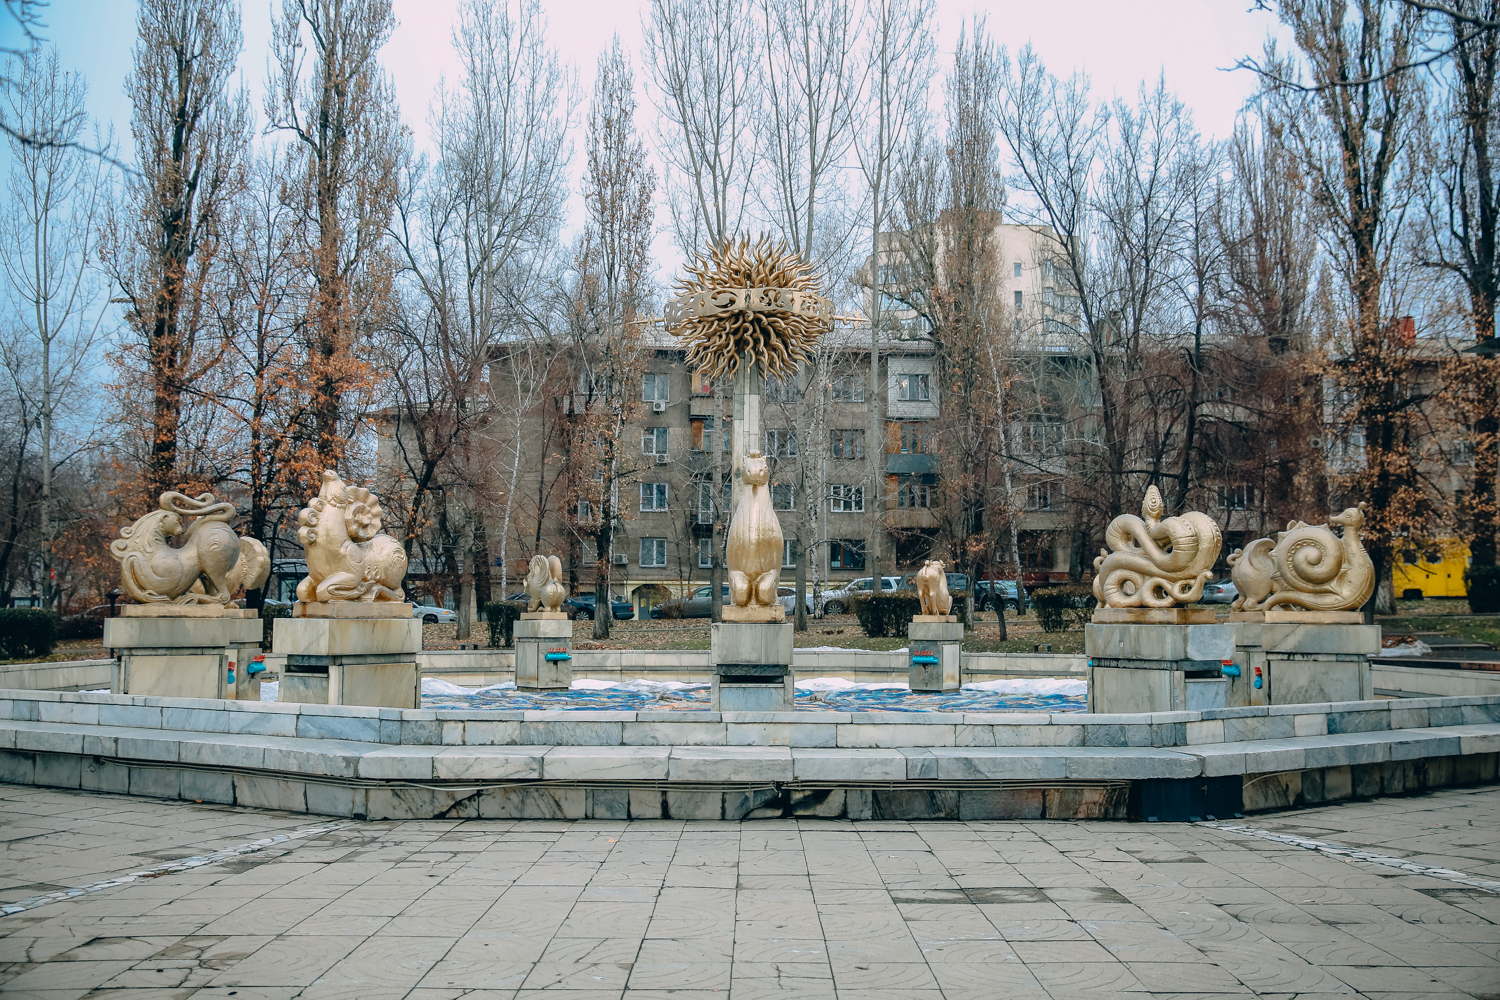 Прогулка по Алматы с коренным жителем — Ерланом Куанышевым